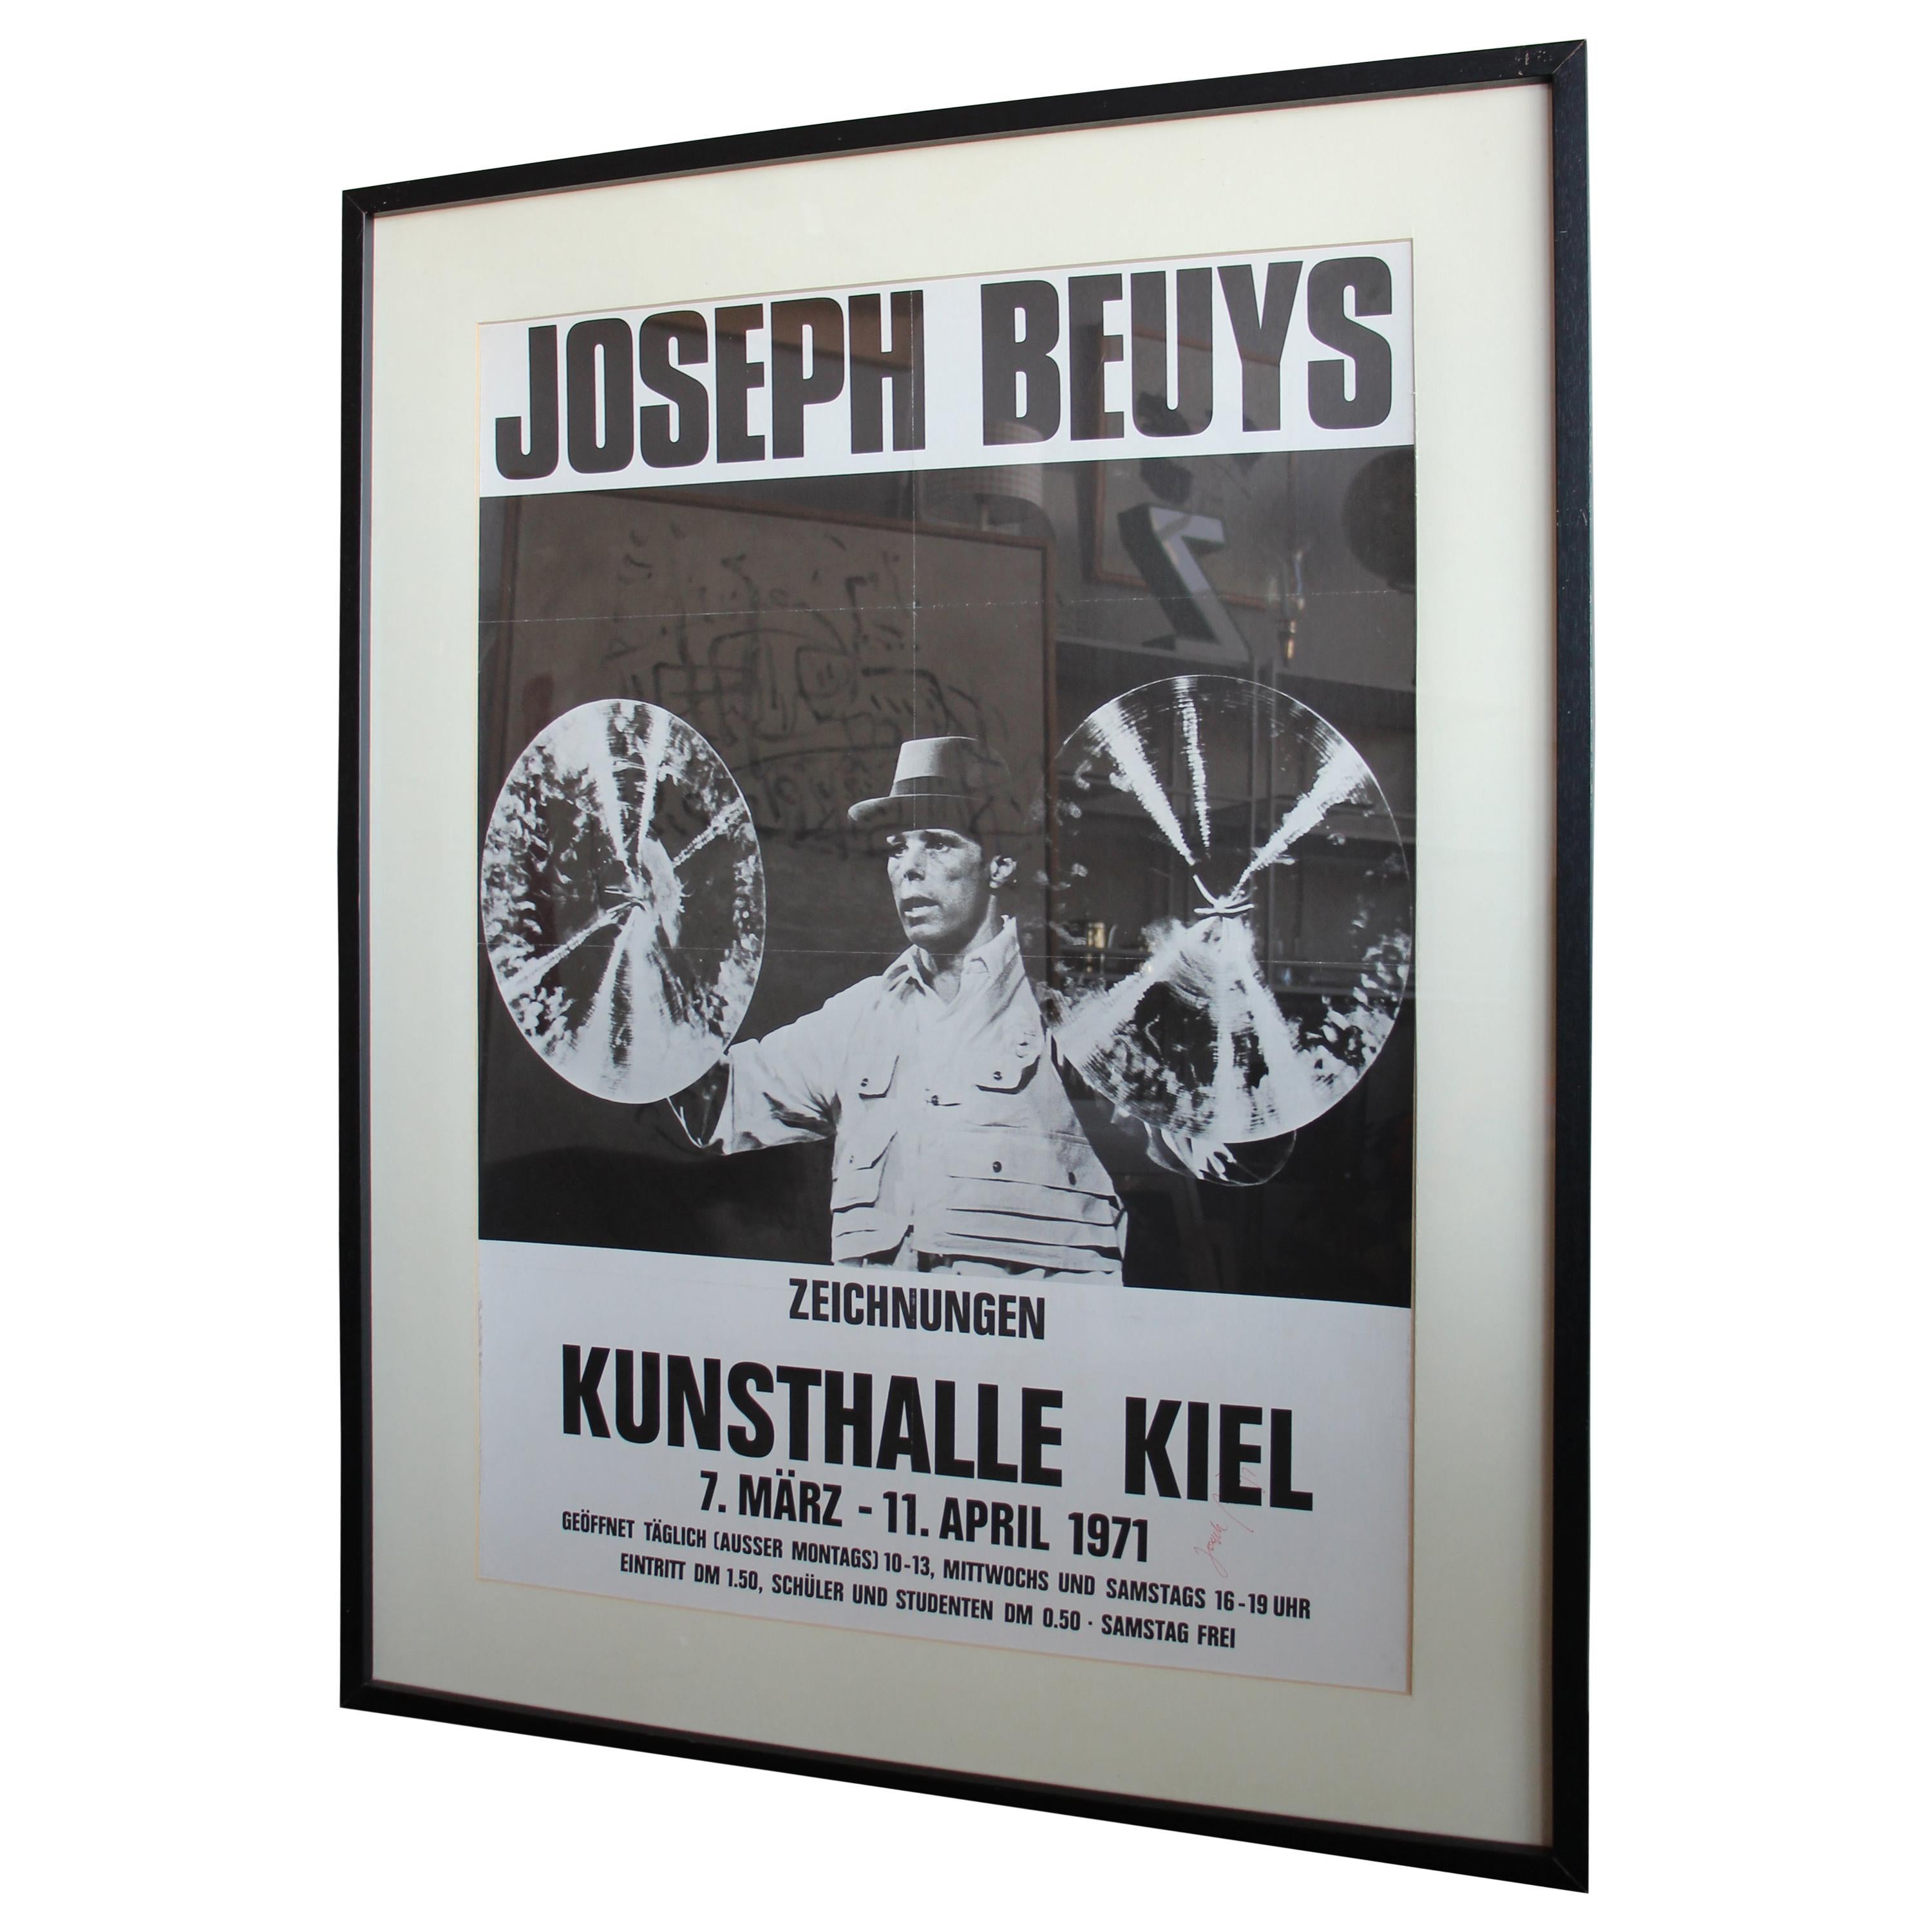 Signed Beuys Exhibition Poster "Joseph Beuys. Zeichnungen Kunstahalle Kiel" 1971